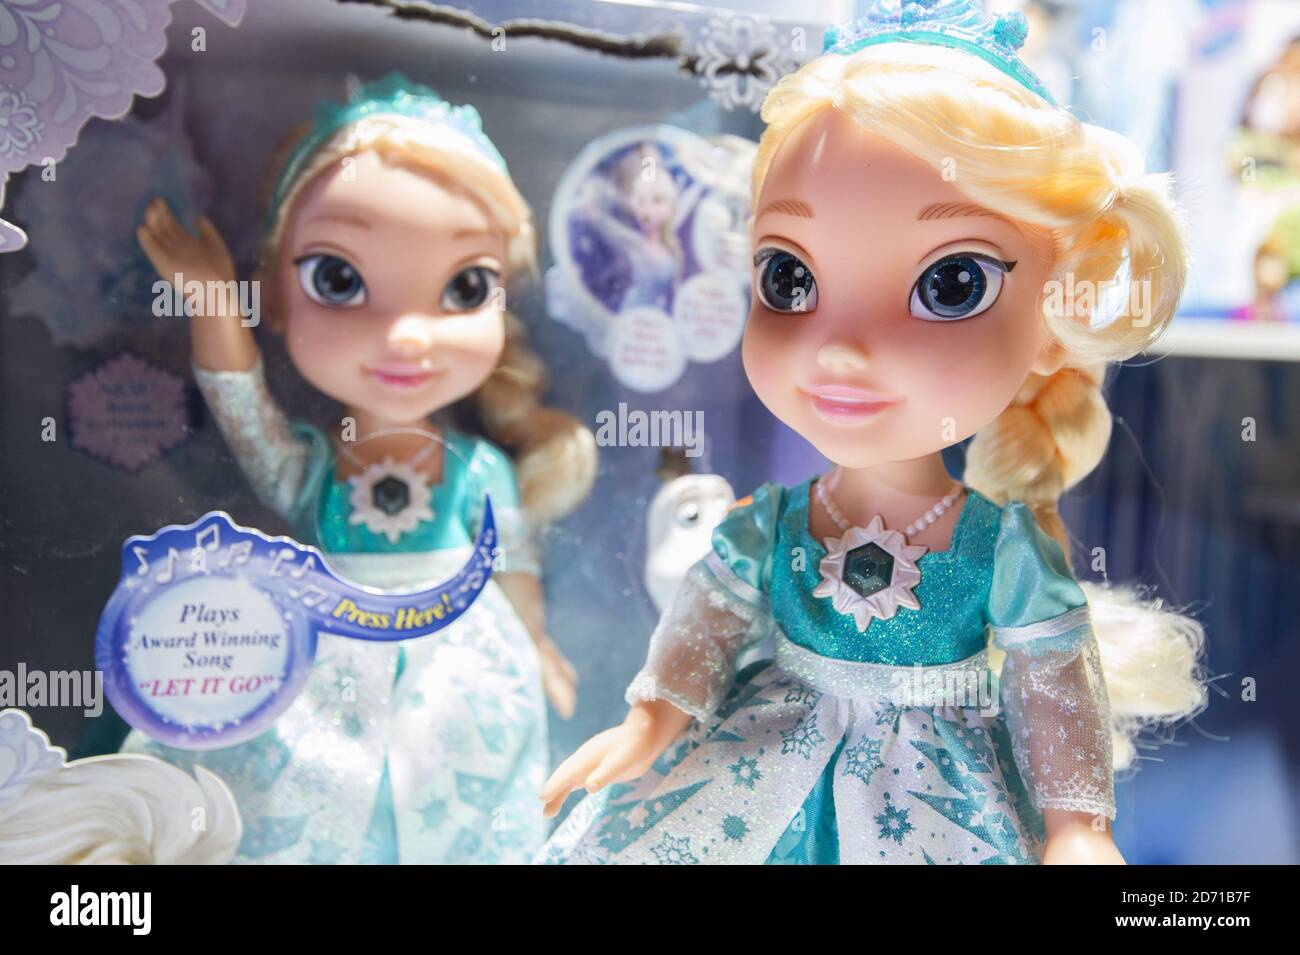 Bonecas Frozen II Sing original Disney Store<br>Exatamente como na foto  ainda<br>Funcionando - Hobbies e coleções - Parque das Nações, Santo André  1254443402